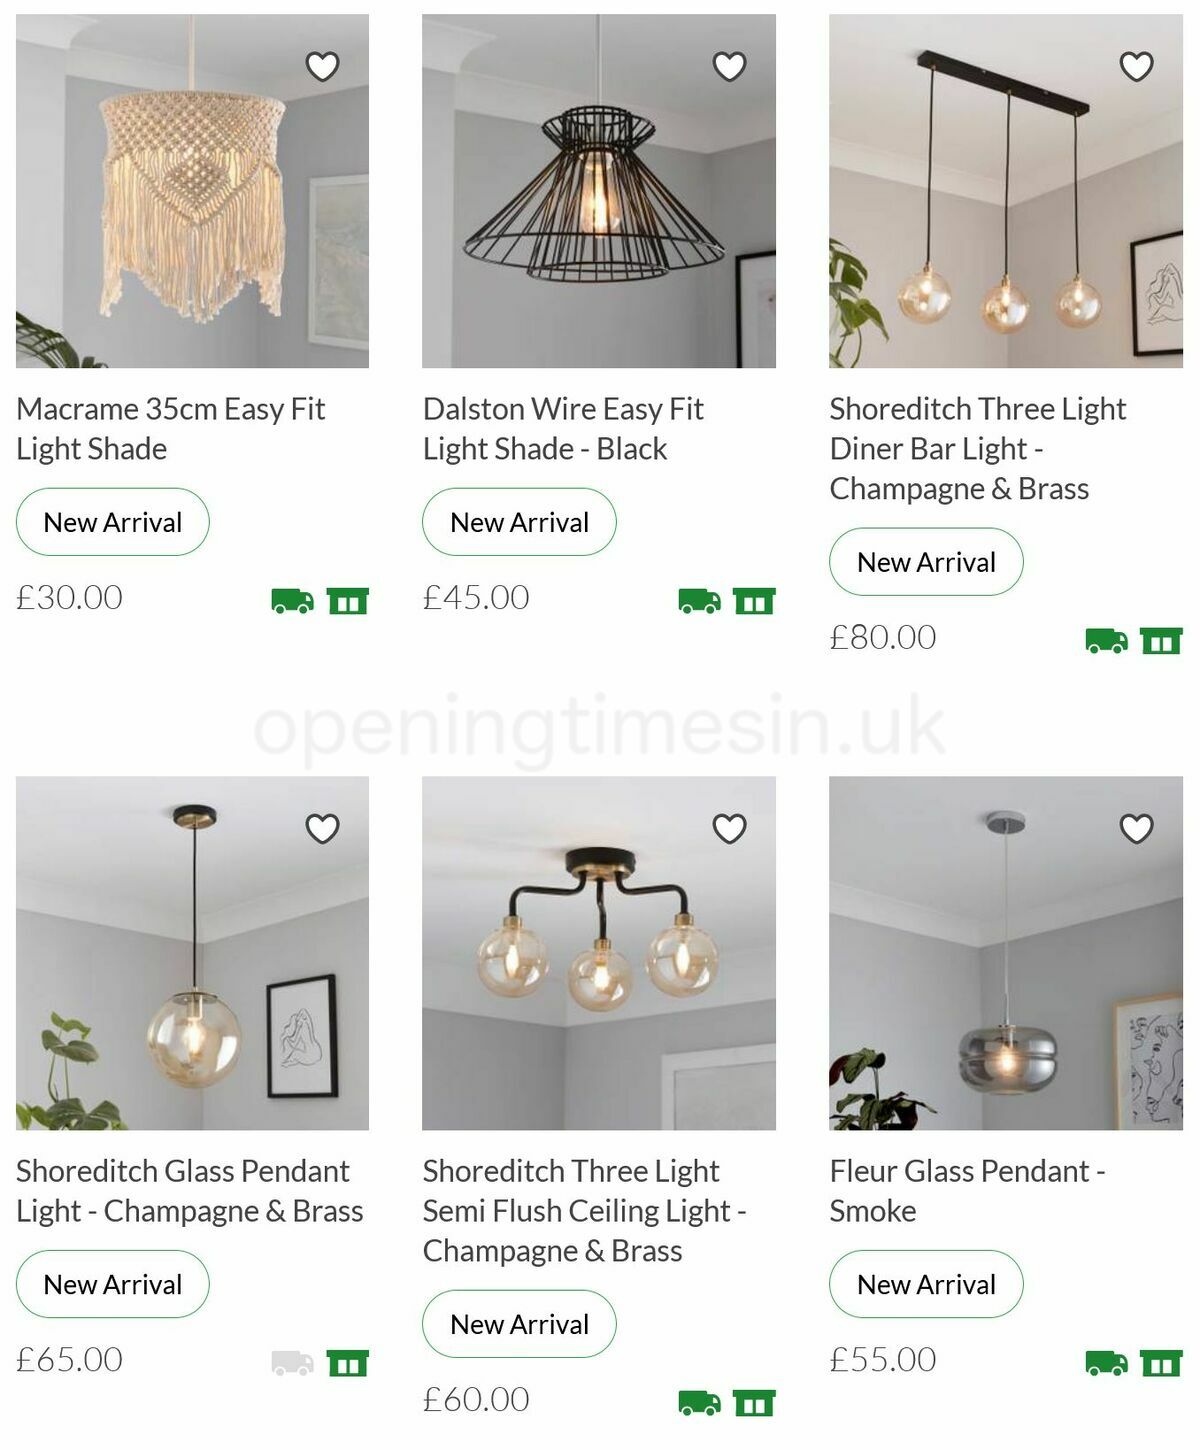 Homebase New Lighting Offers from 13 June